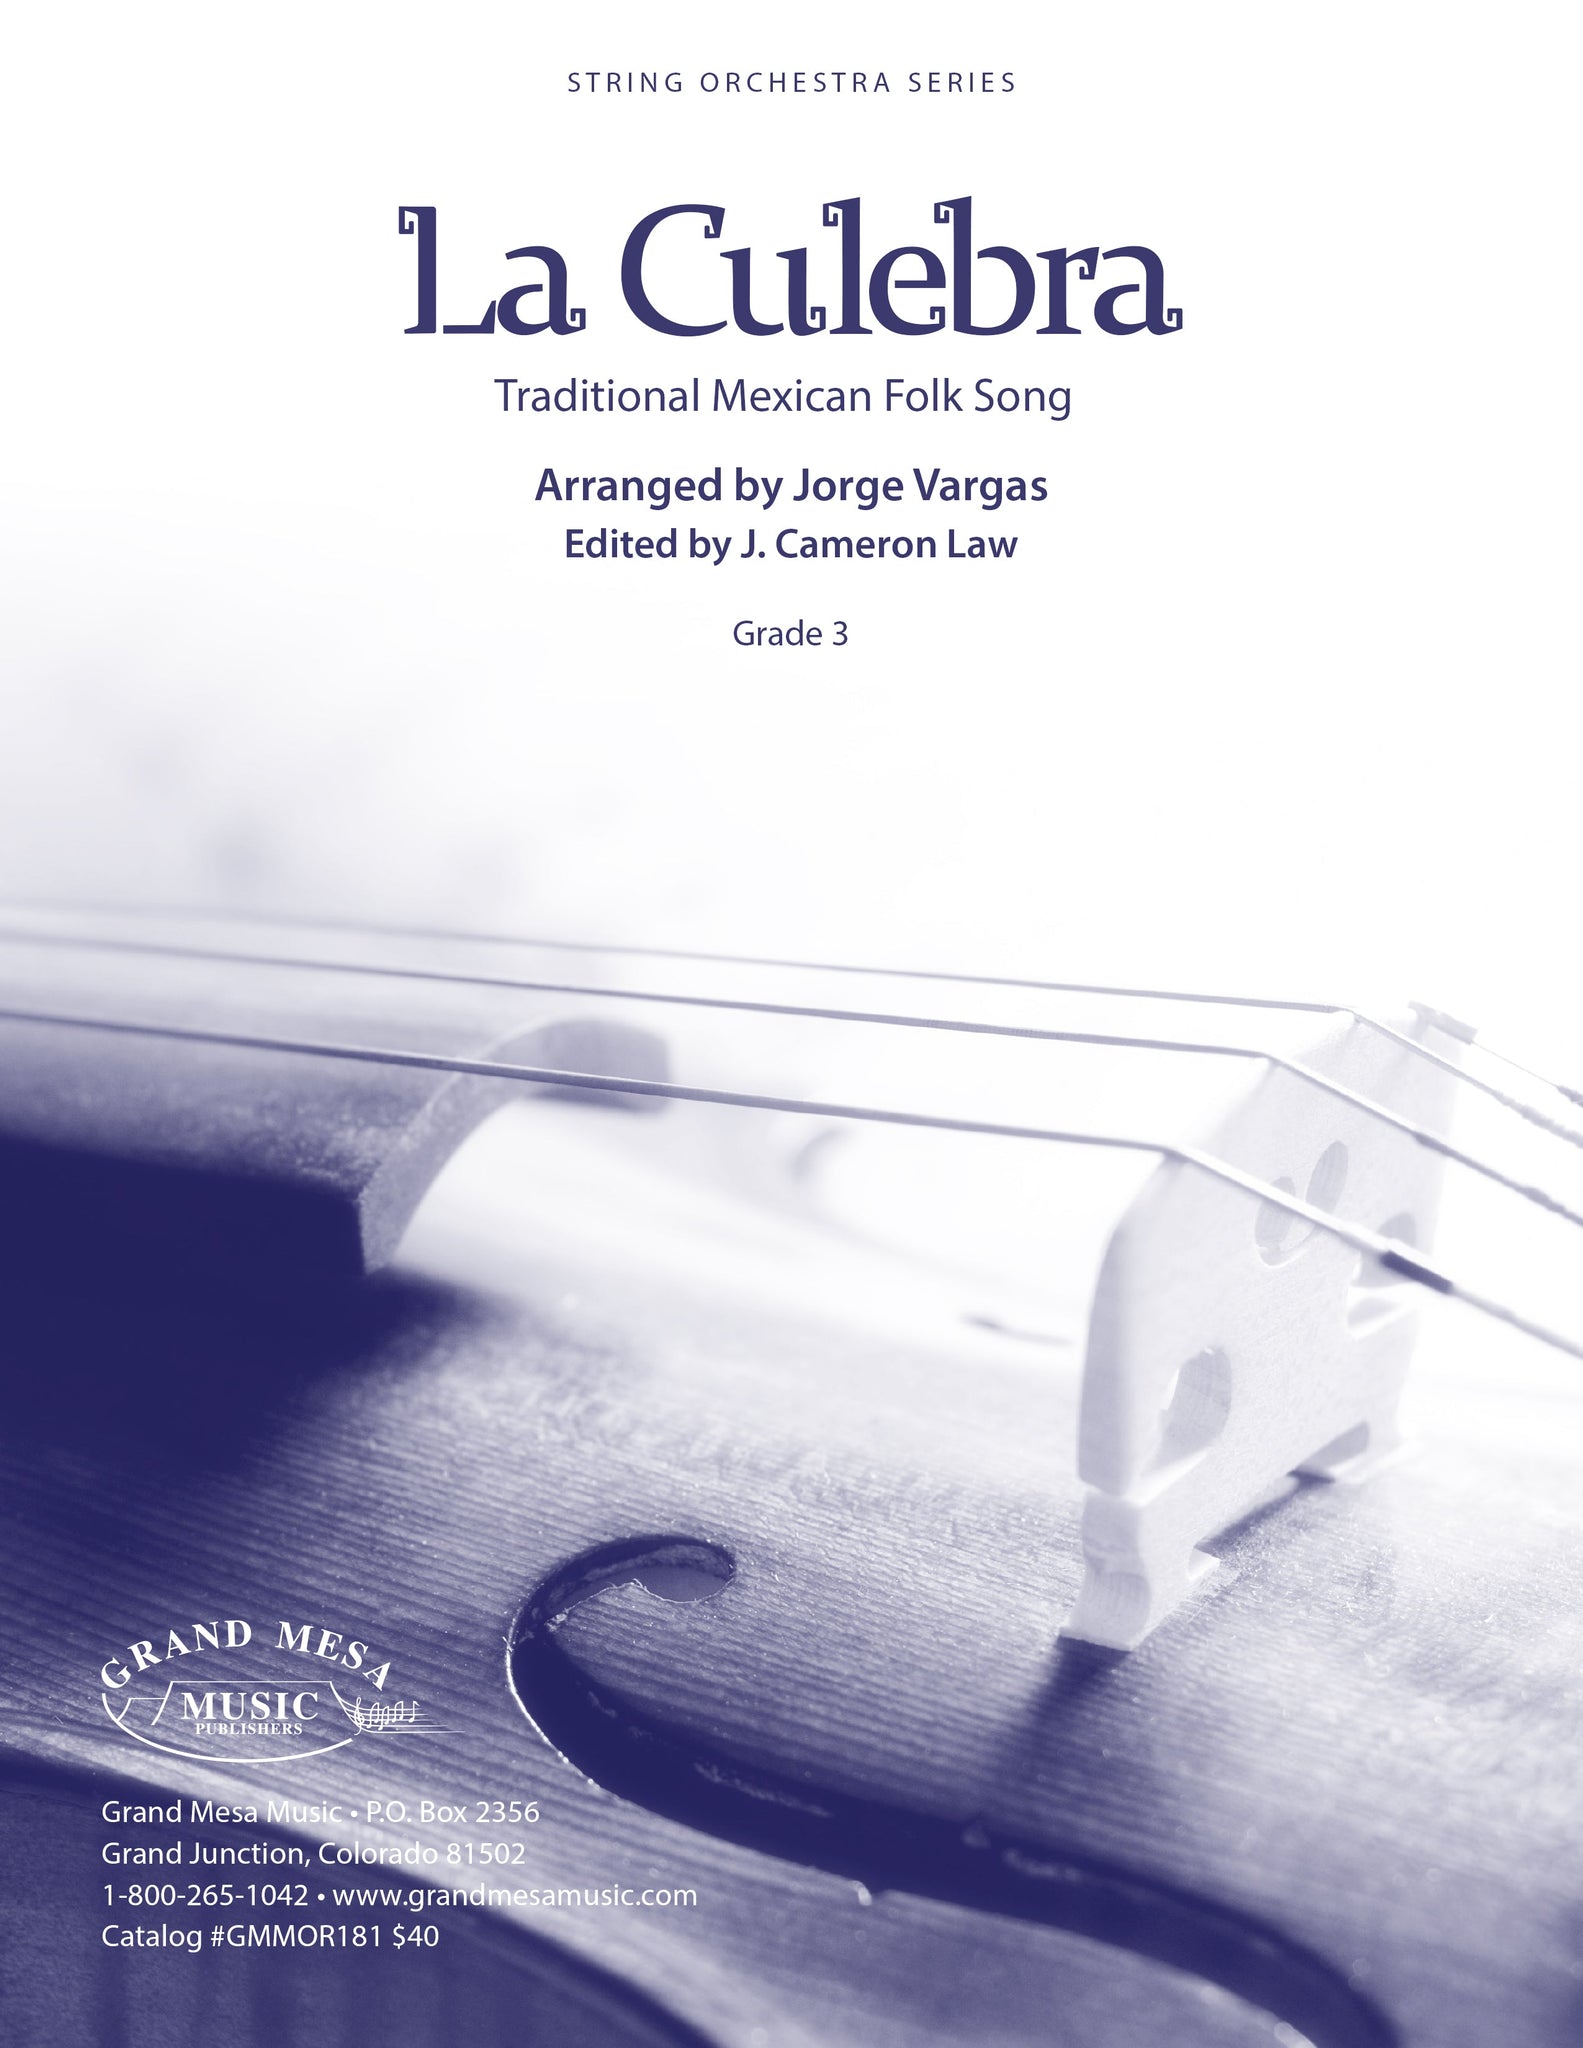 Strings sheet music cover of La Culebra, arranged by Jorge Vargas.